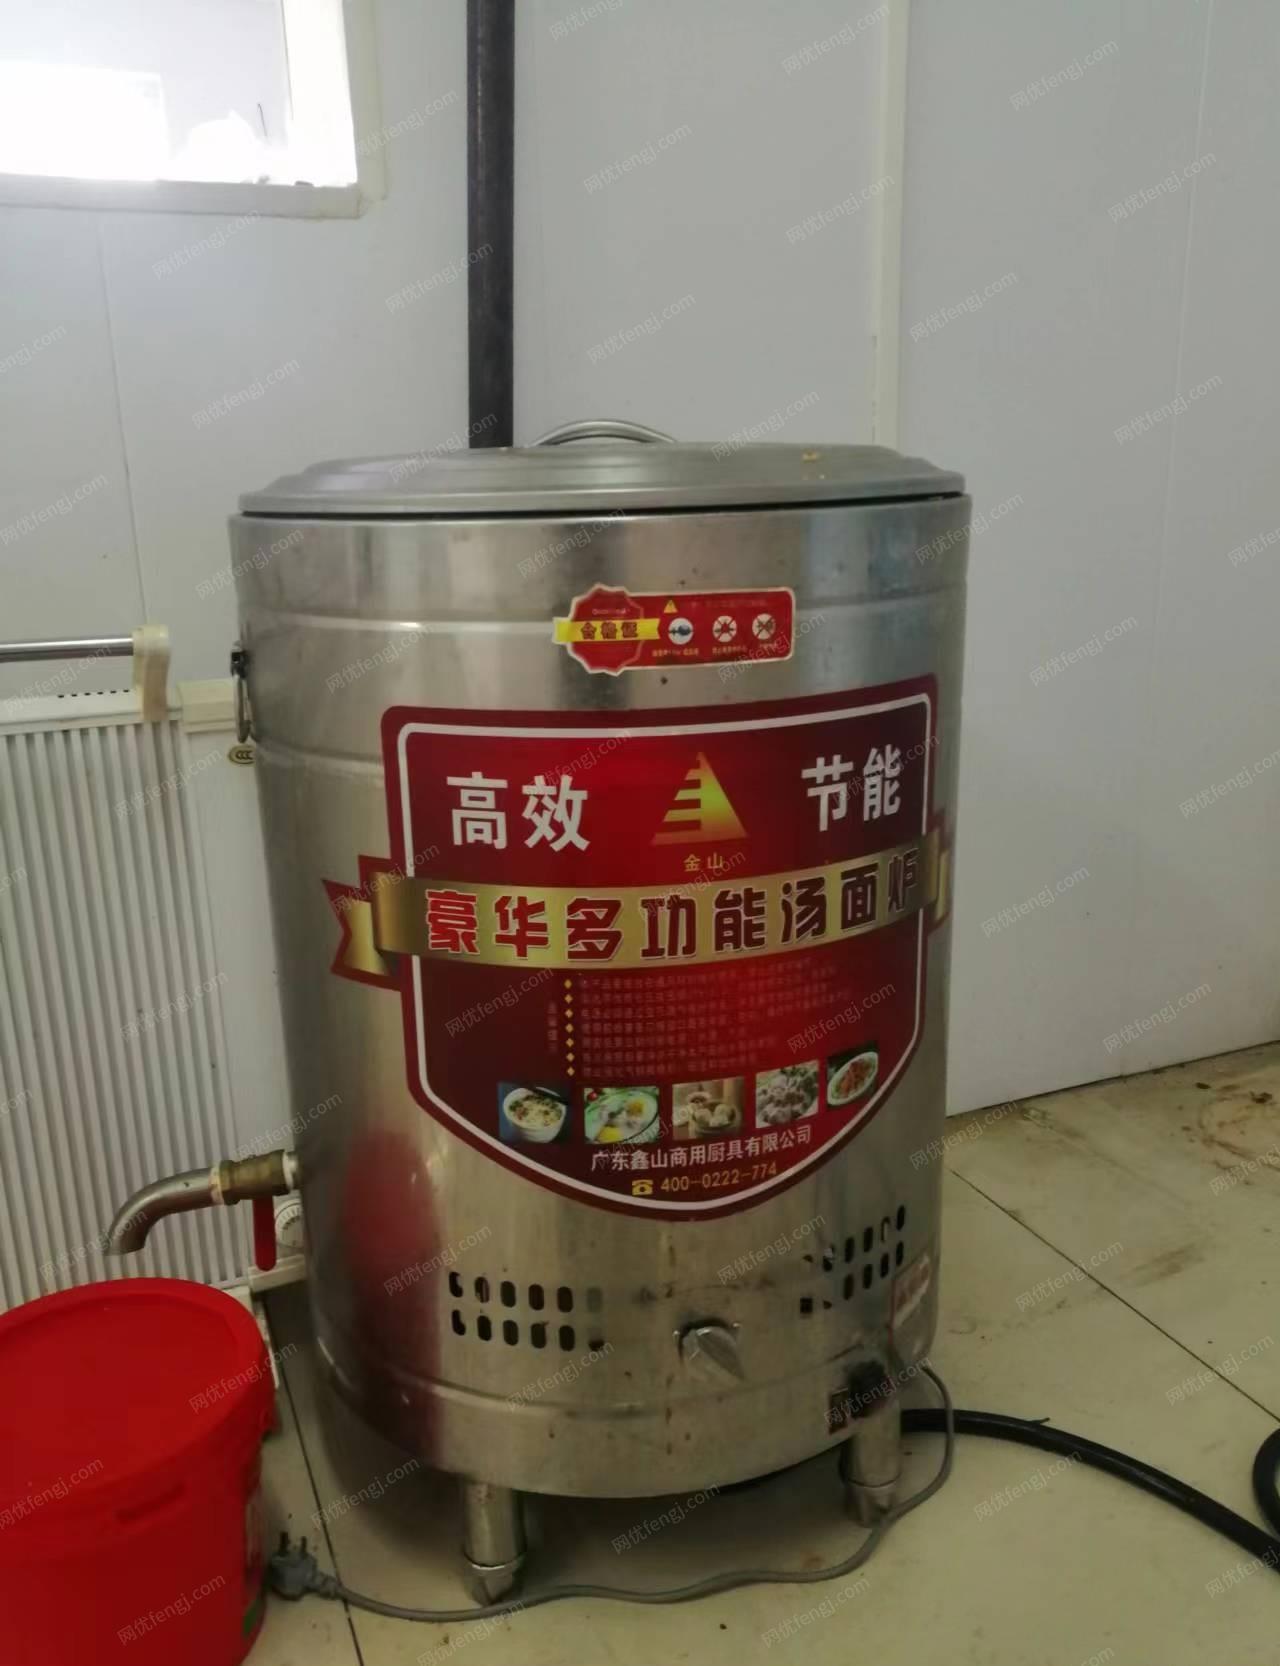 天津北辰区煮面桶、九成新、低价转让